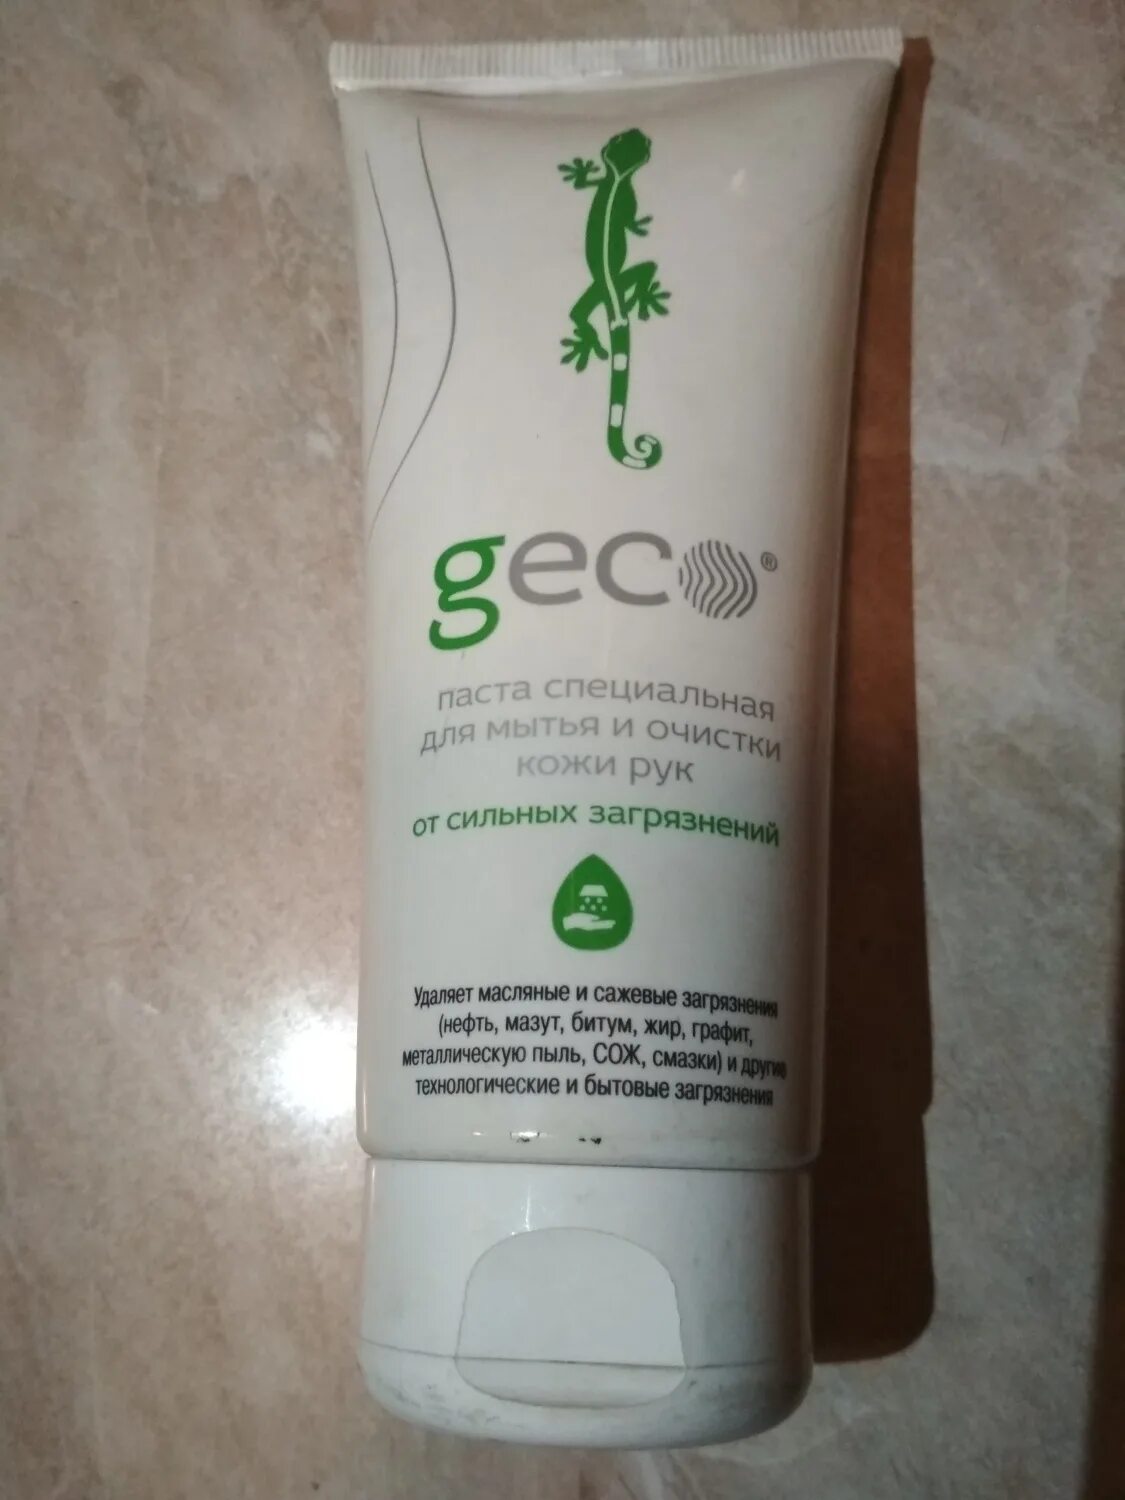 Для очистки рук от сильных загрязнений. Geco паста специальная. Geco паста специальная для очистки кожи рук. Очищающая паста Геко. Паста для очистки рук от сильных загрязнений Geco.